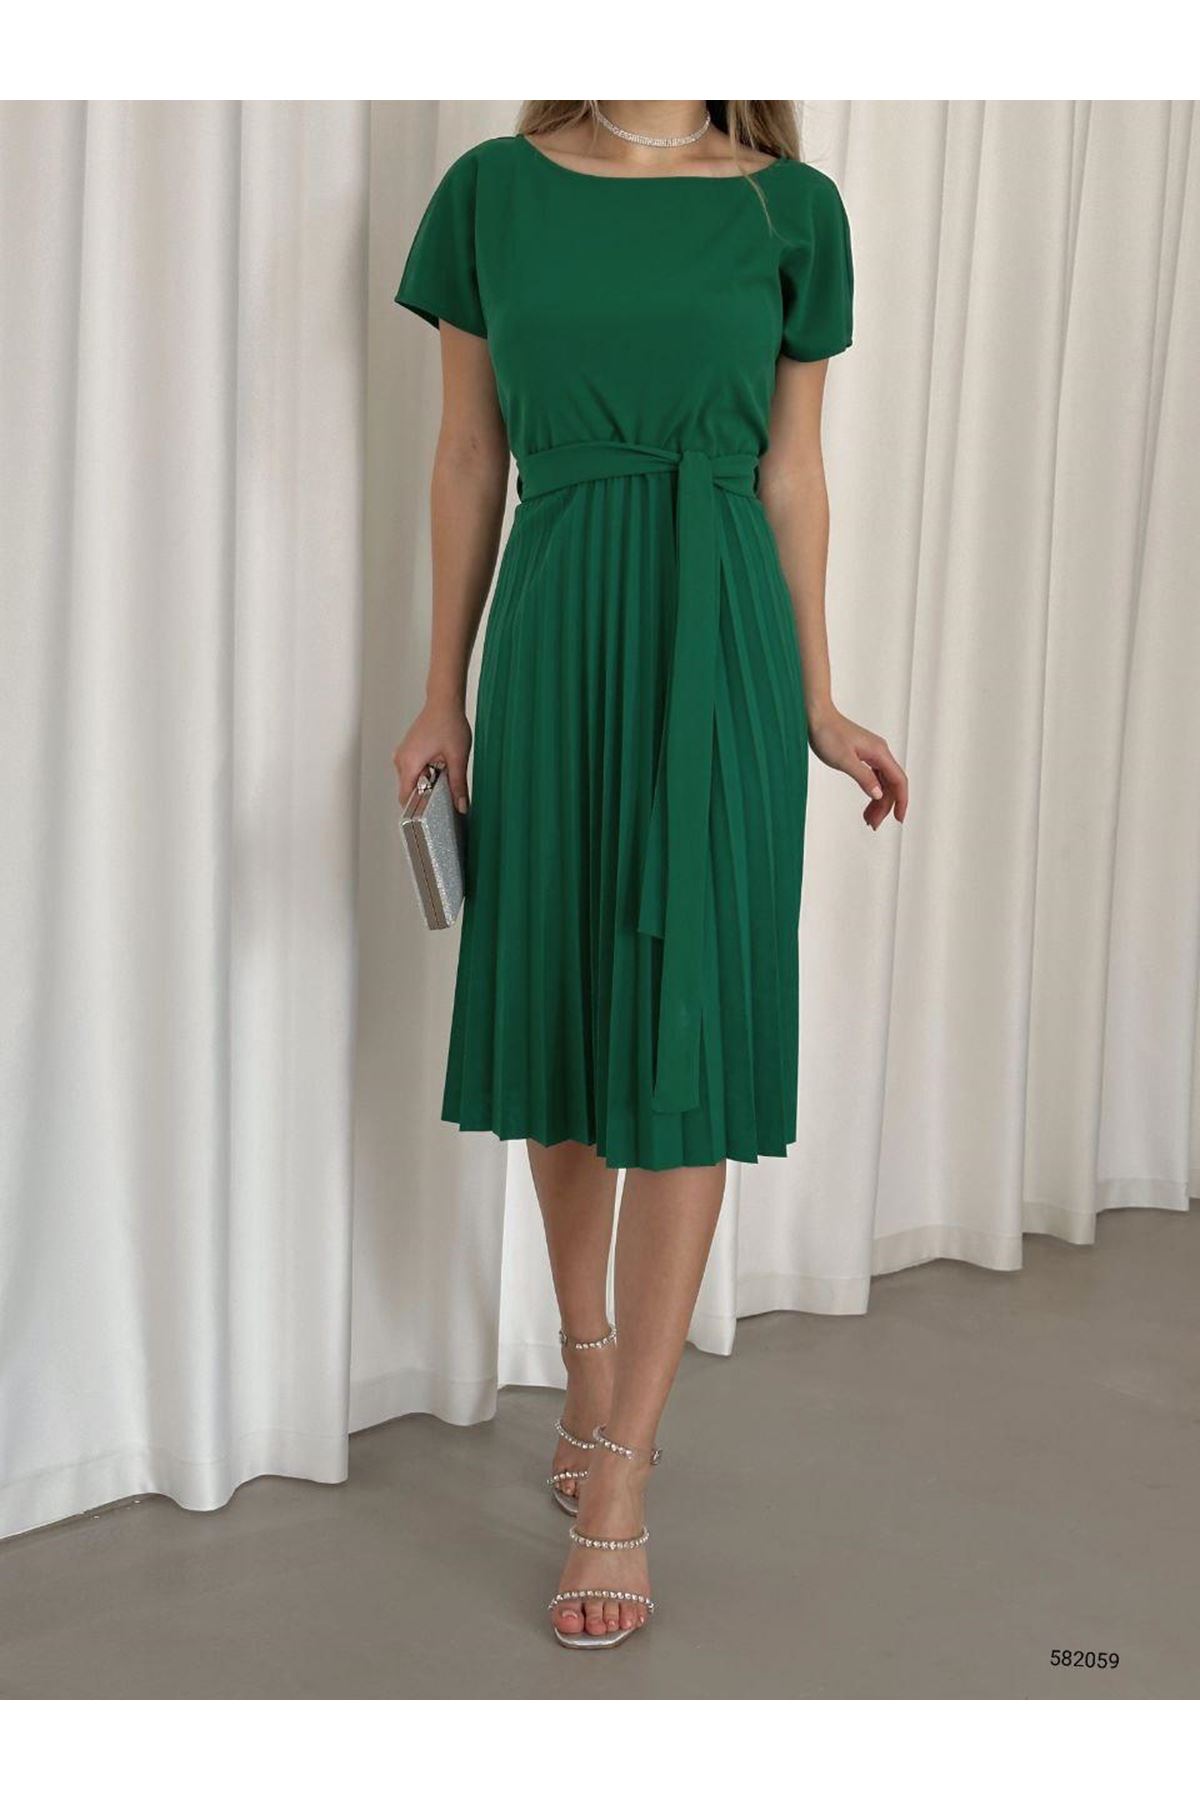 Kadın Yeşil Krep Kumaş Pliseli Kuşaklı Dizaltı Elbise 2E-2125